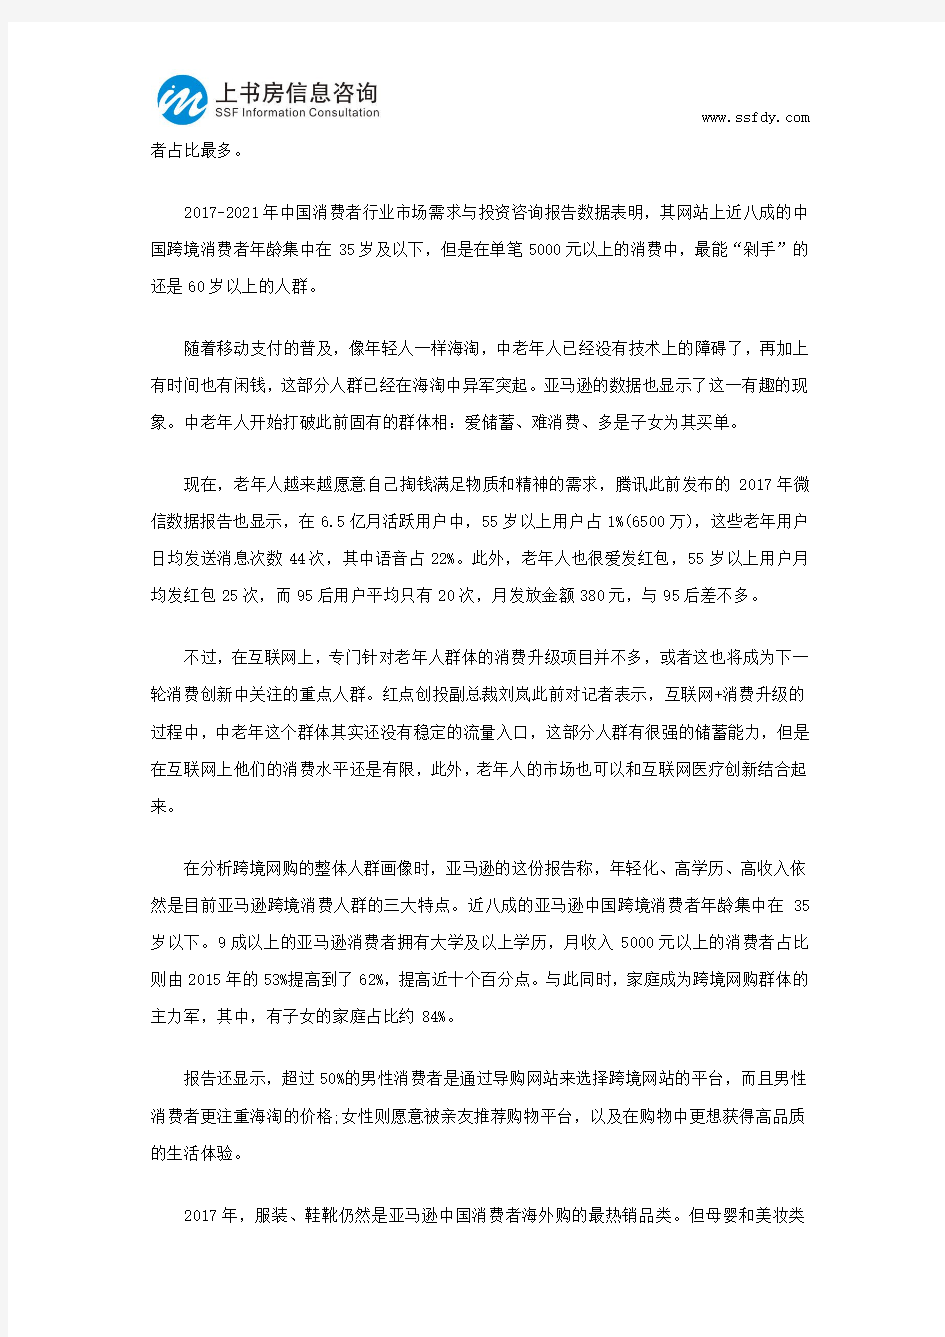 中国跨境网购市场调研报告-上书房信息咨询